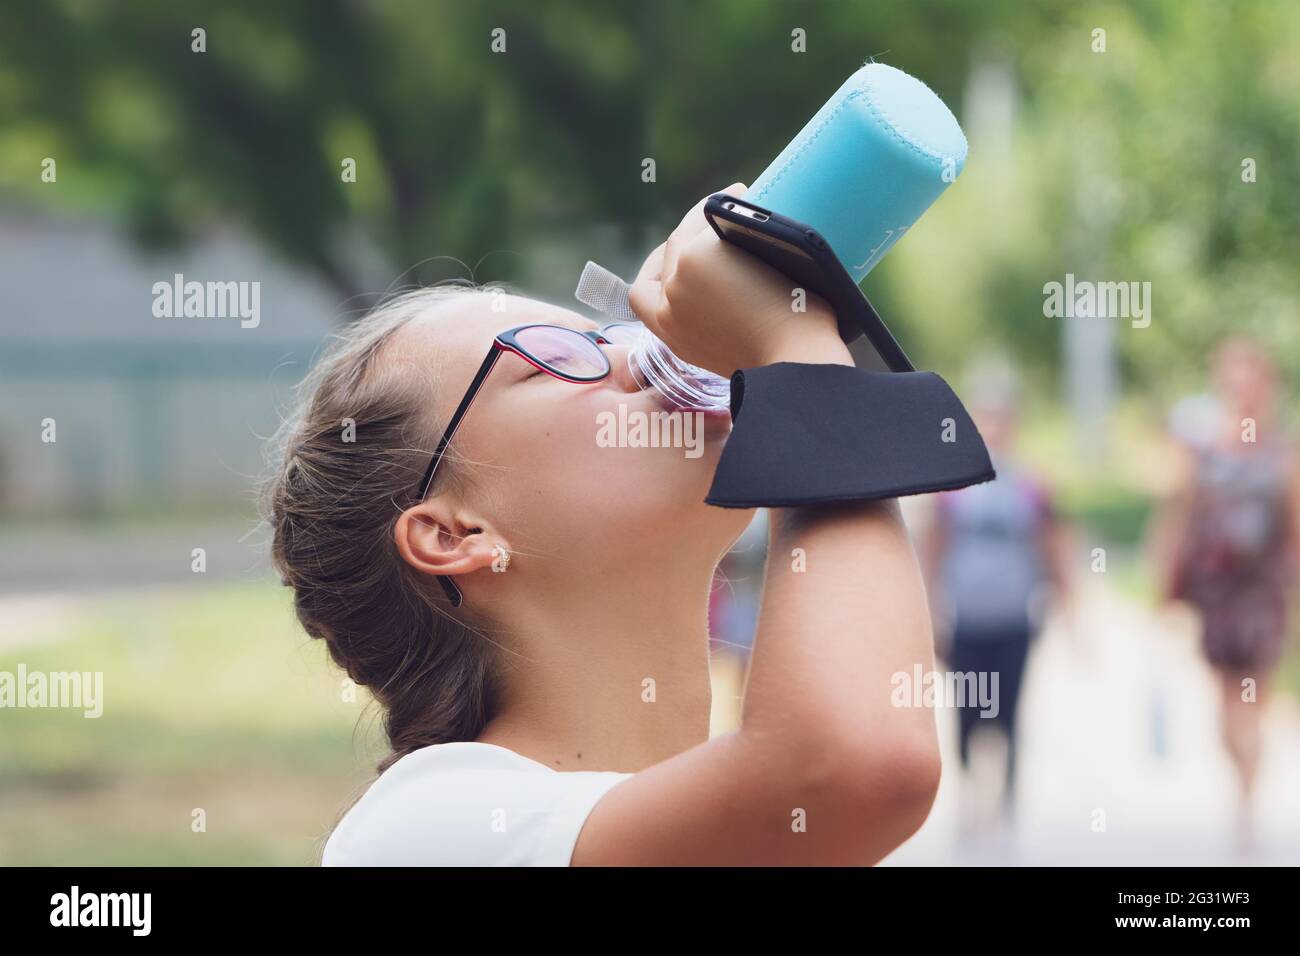 Une adolescente de la rue boit de l'eau. Banque D'Images